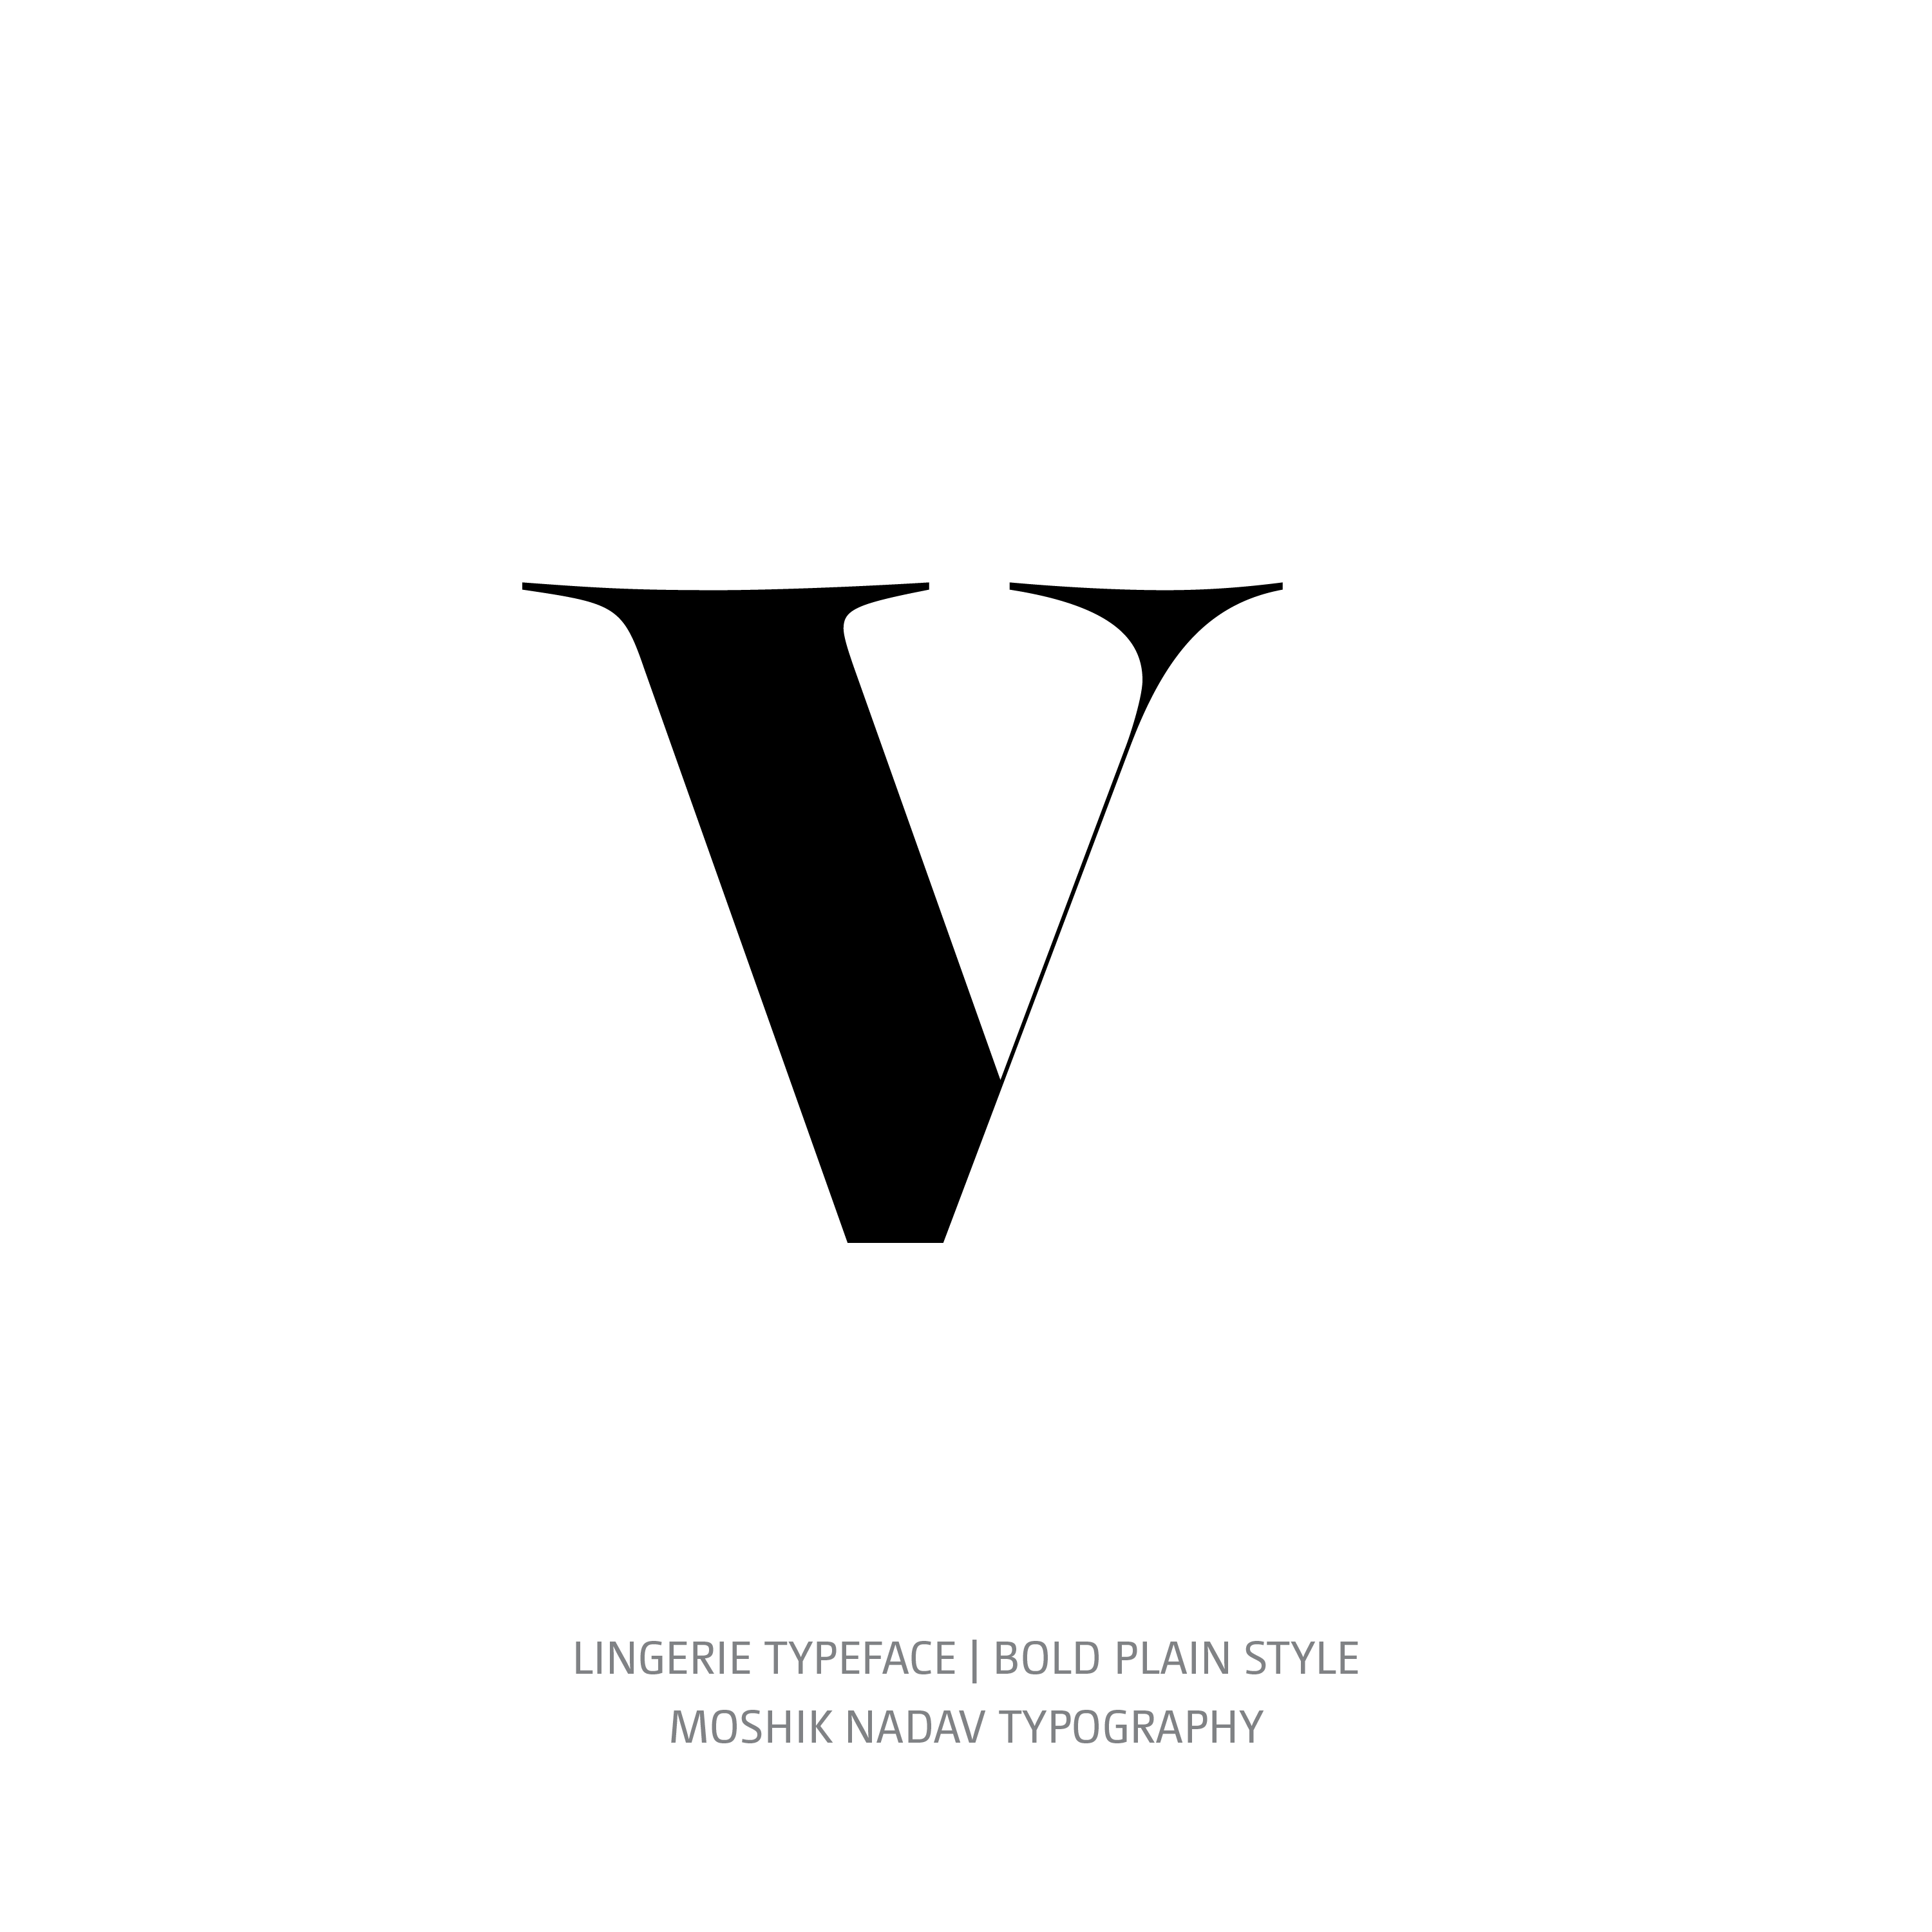 Lingerie Typeface Bold Plain v